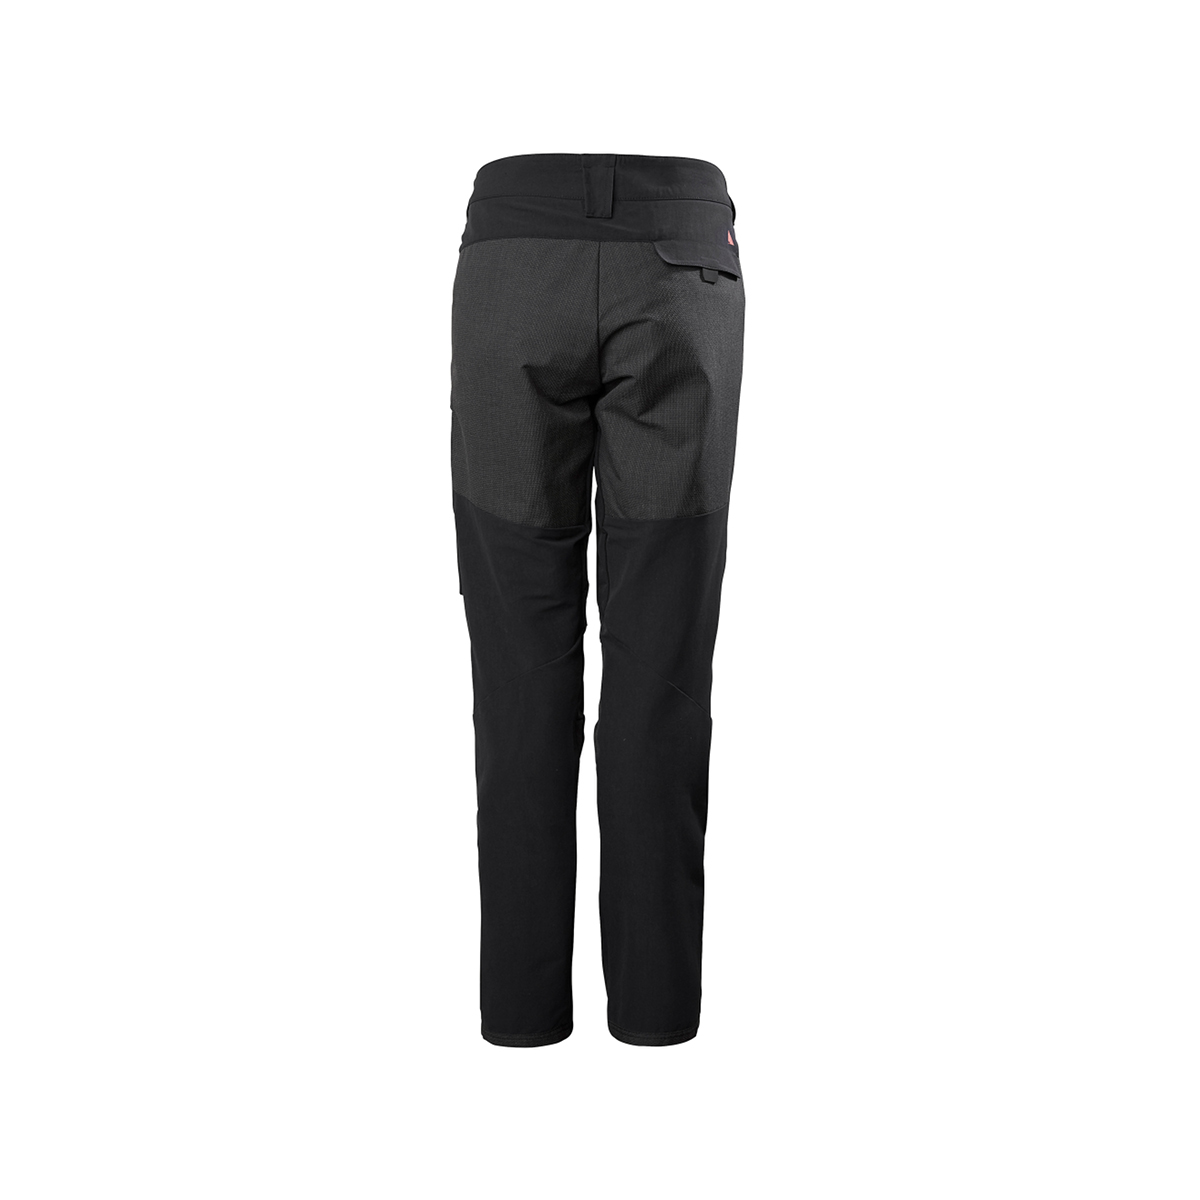 Musto Evolution Performance pantalon de voile 2.0 femme noir, taille 14 Long